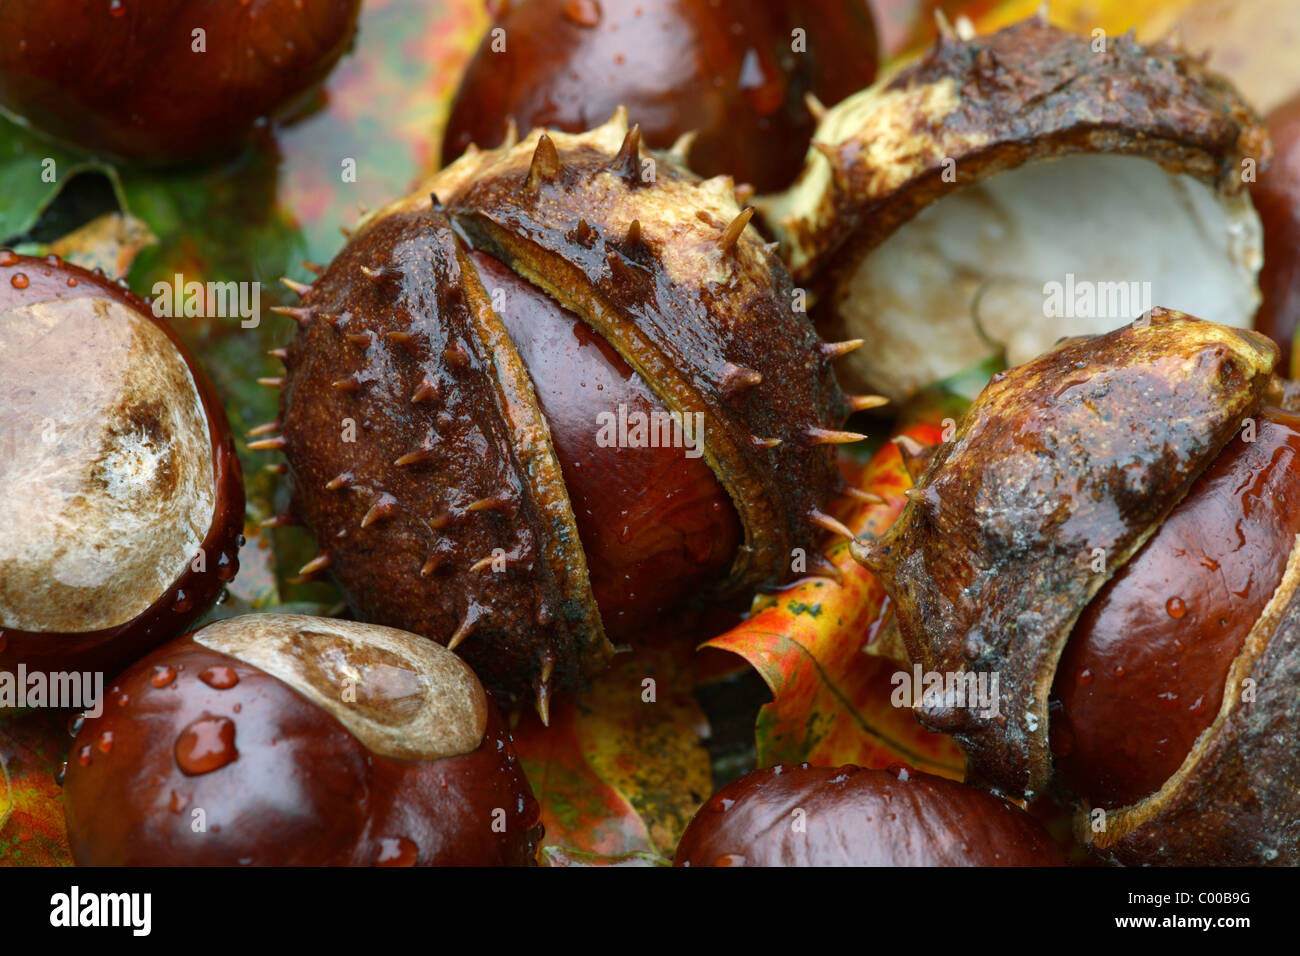 Gemeine Rosskastanien, Fruechte, Aesculus hippocastanum, Horse chestnut, Fruits Stock Photo